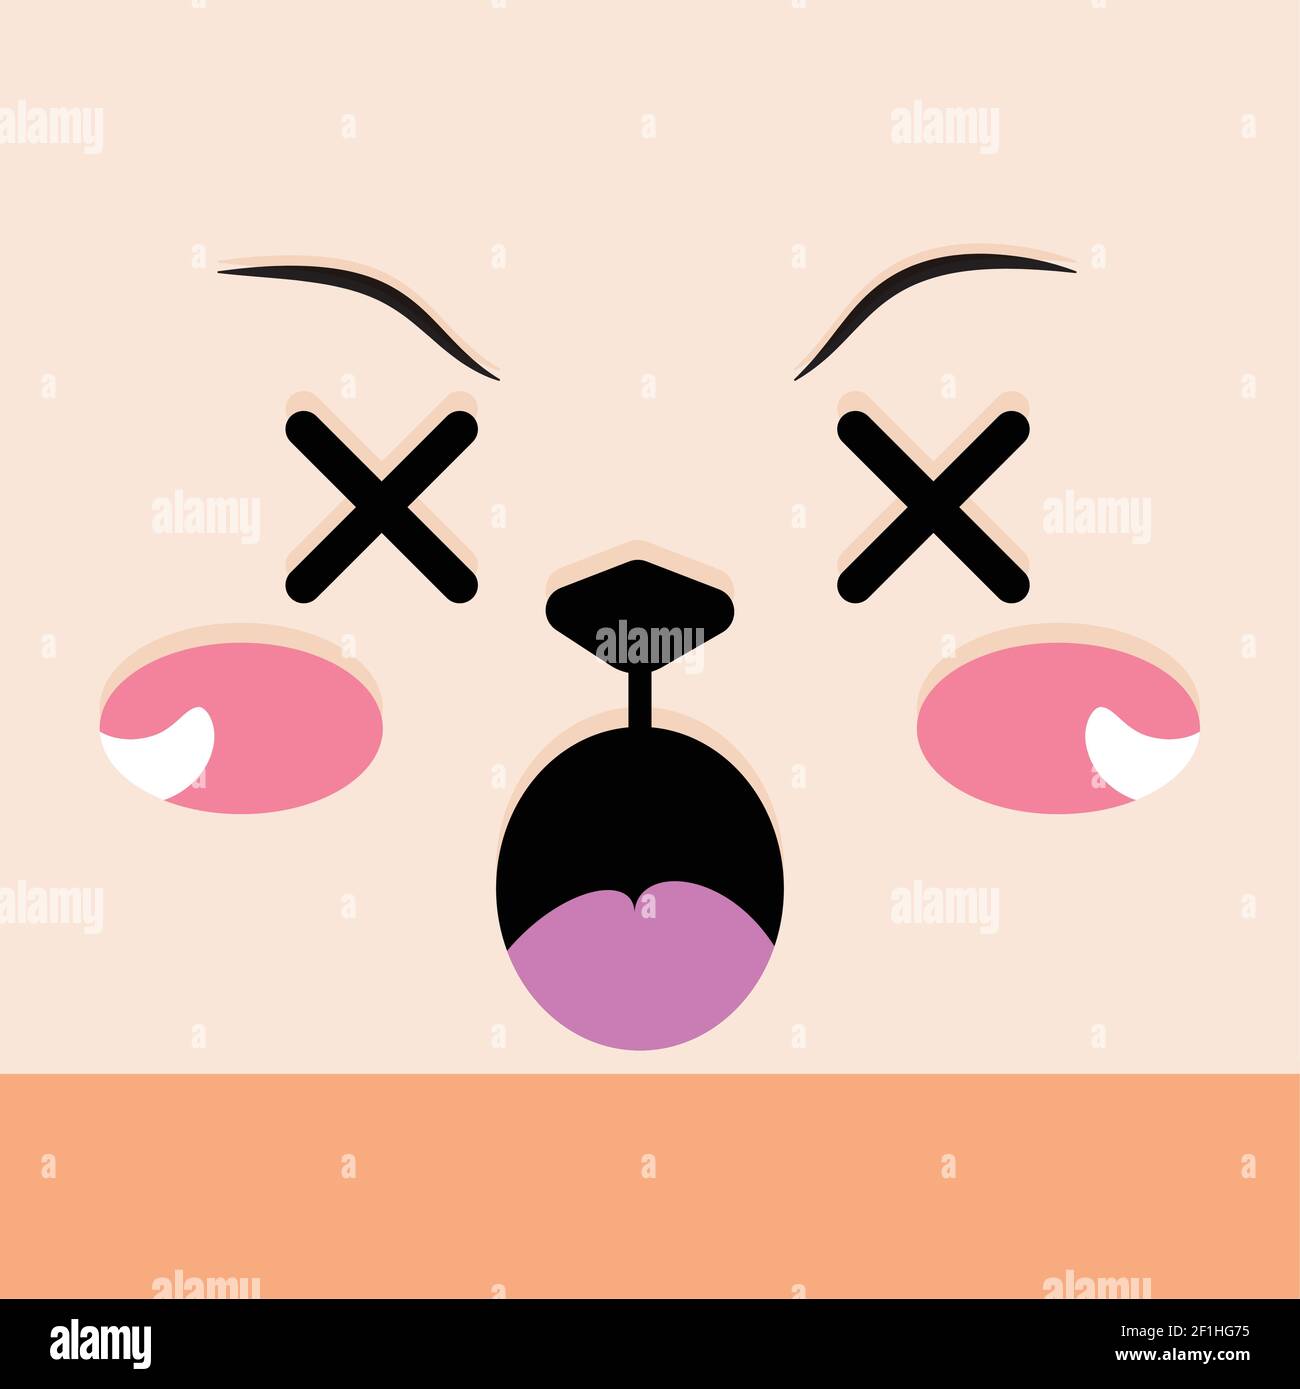 Dizzy facial expression cartoon Stock Vector